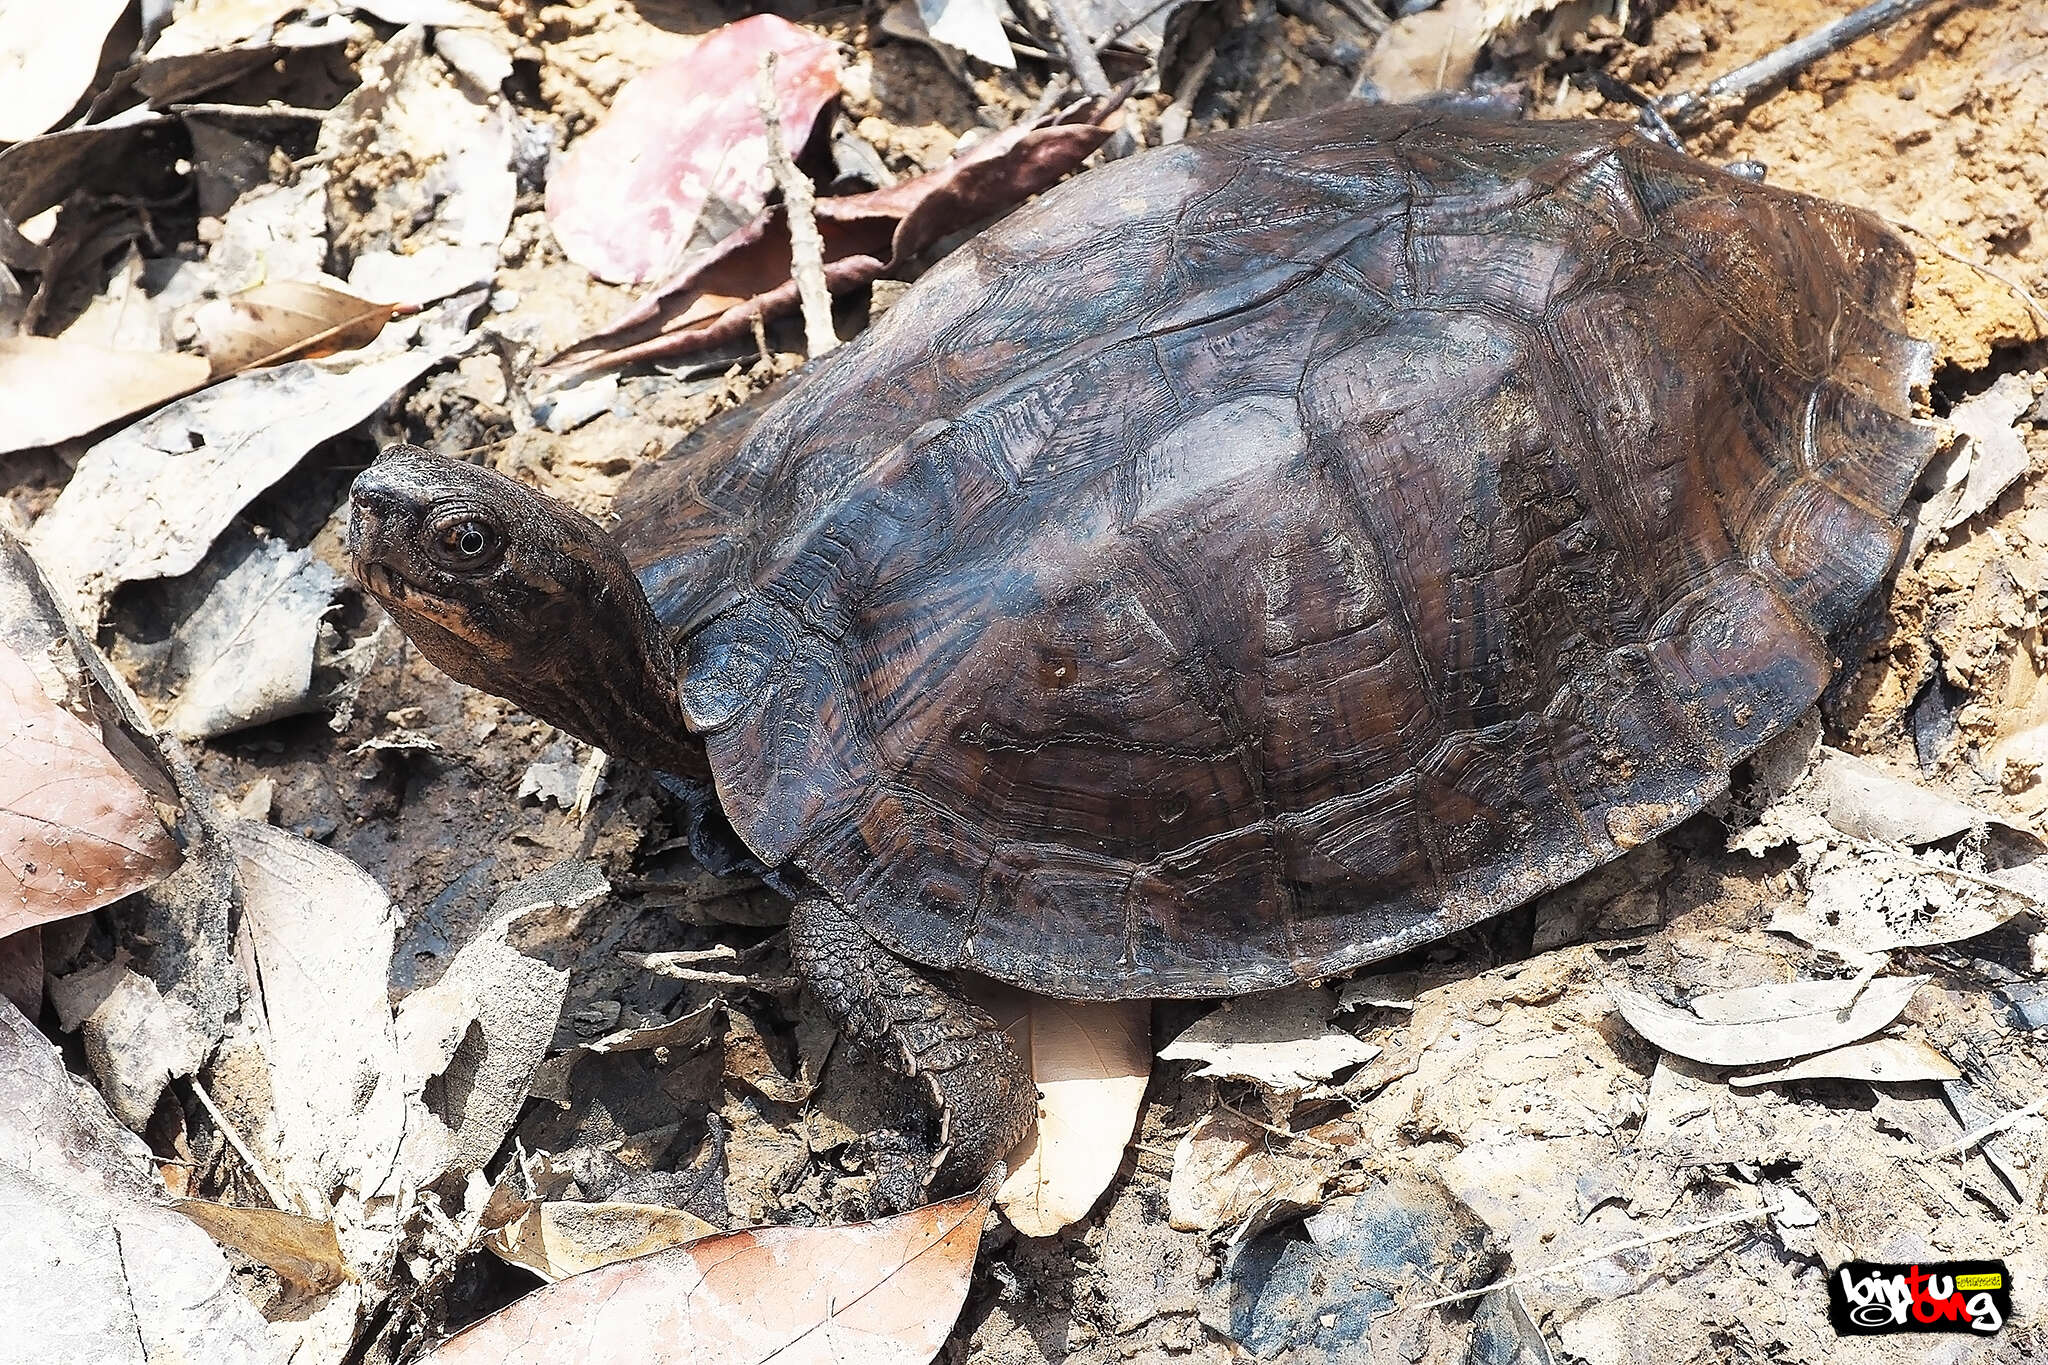 Image of Oldham’s Leaf Turtle